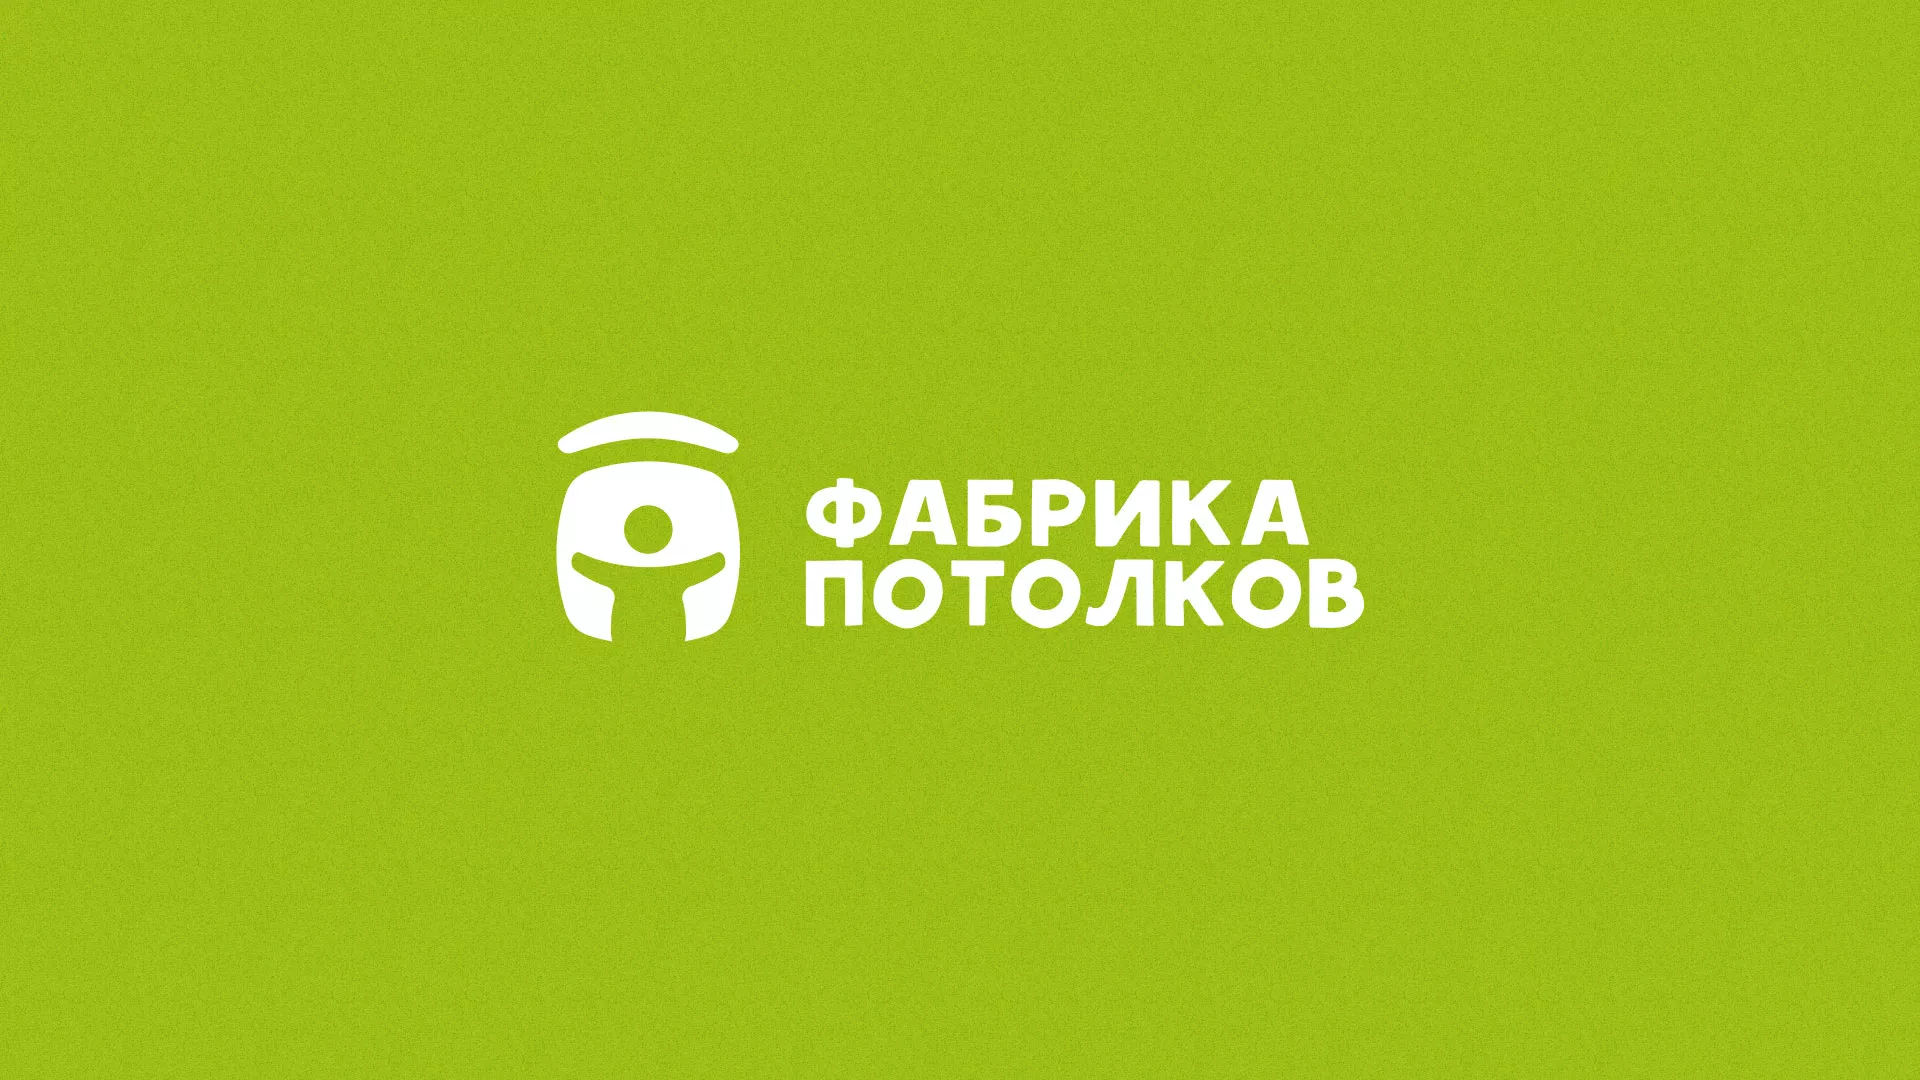 Разработка логотипа для производства натяжных потолков в Звенигово